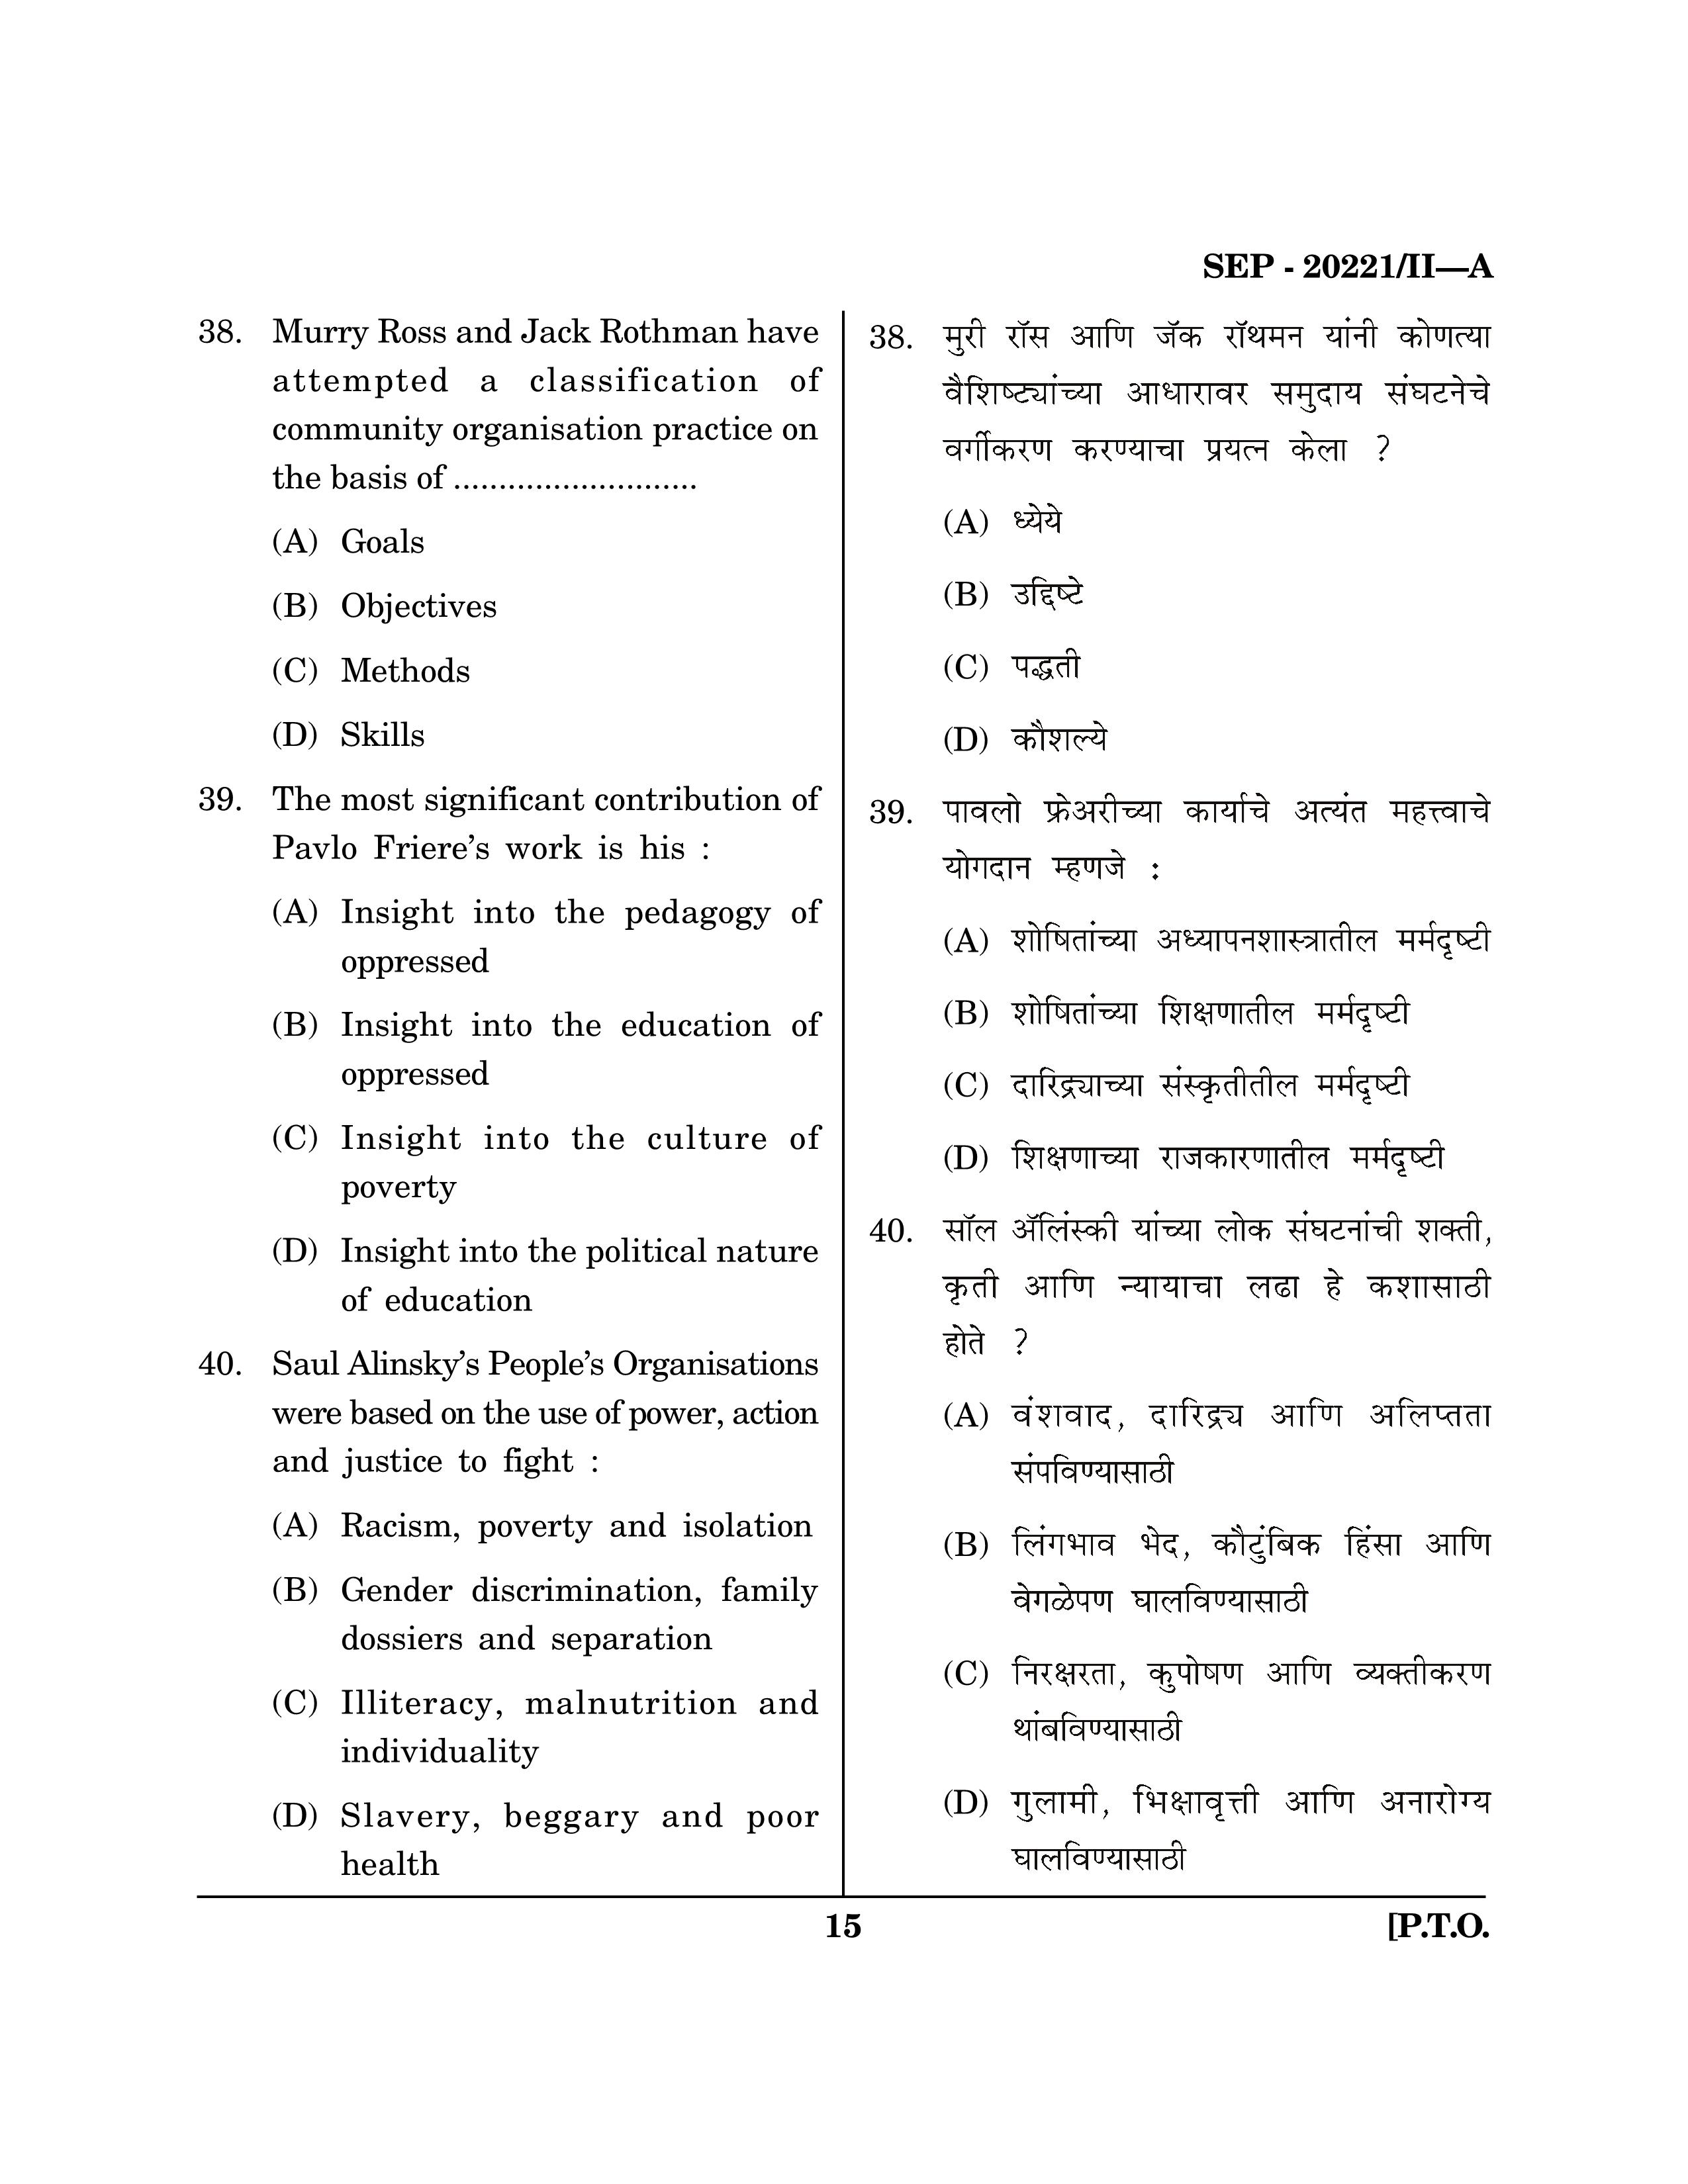 Maharashtra SET Social Work Exam Question Paper September 2021 14